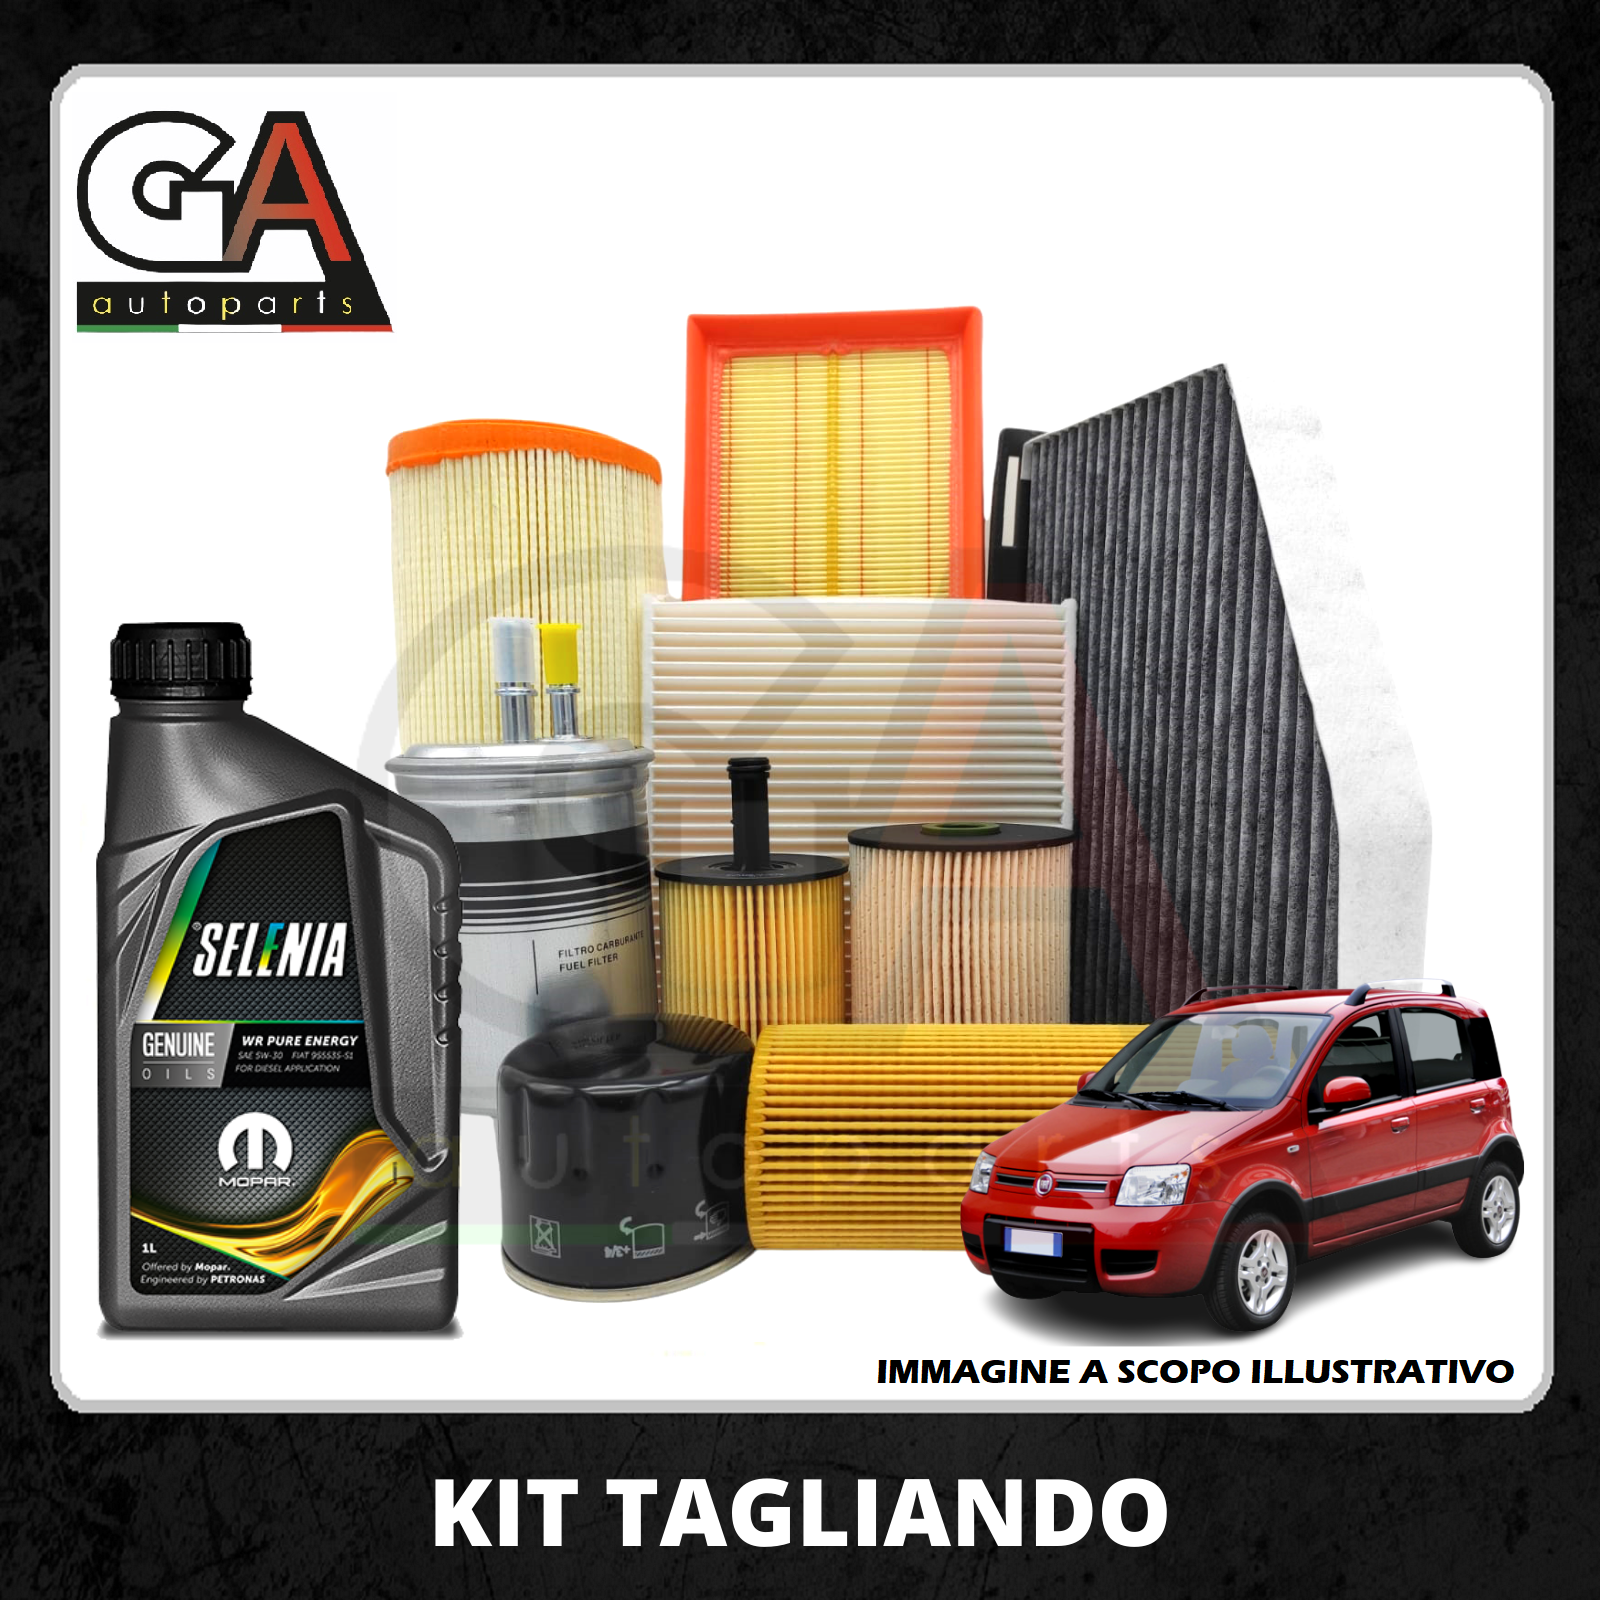 Kit Tagliando Fiat Panda 500 1.3 Multijet kw 55 51 + 4 L Selenia